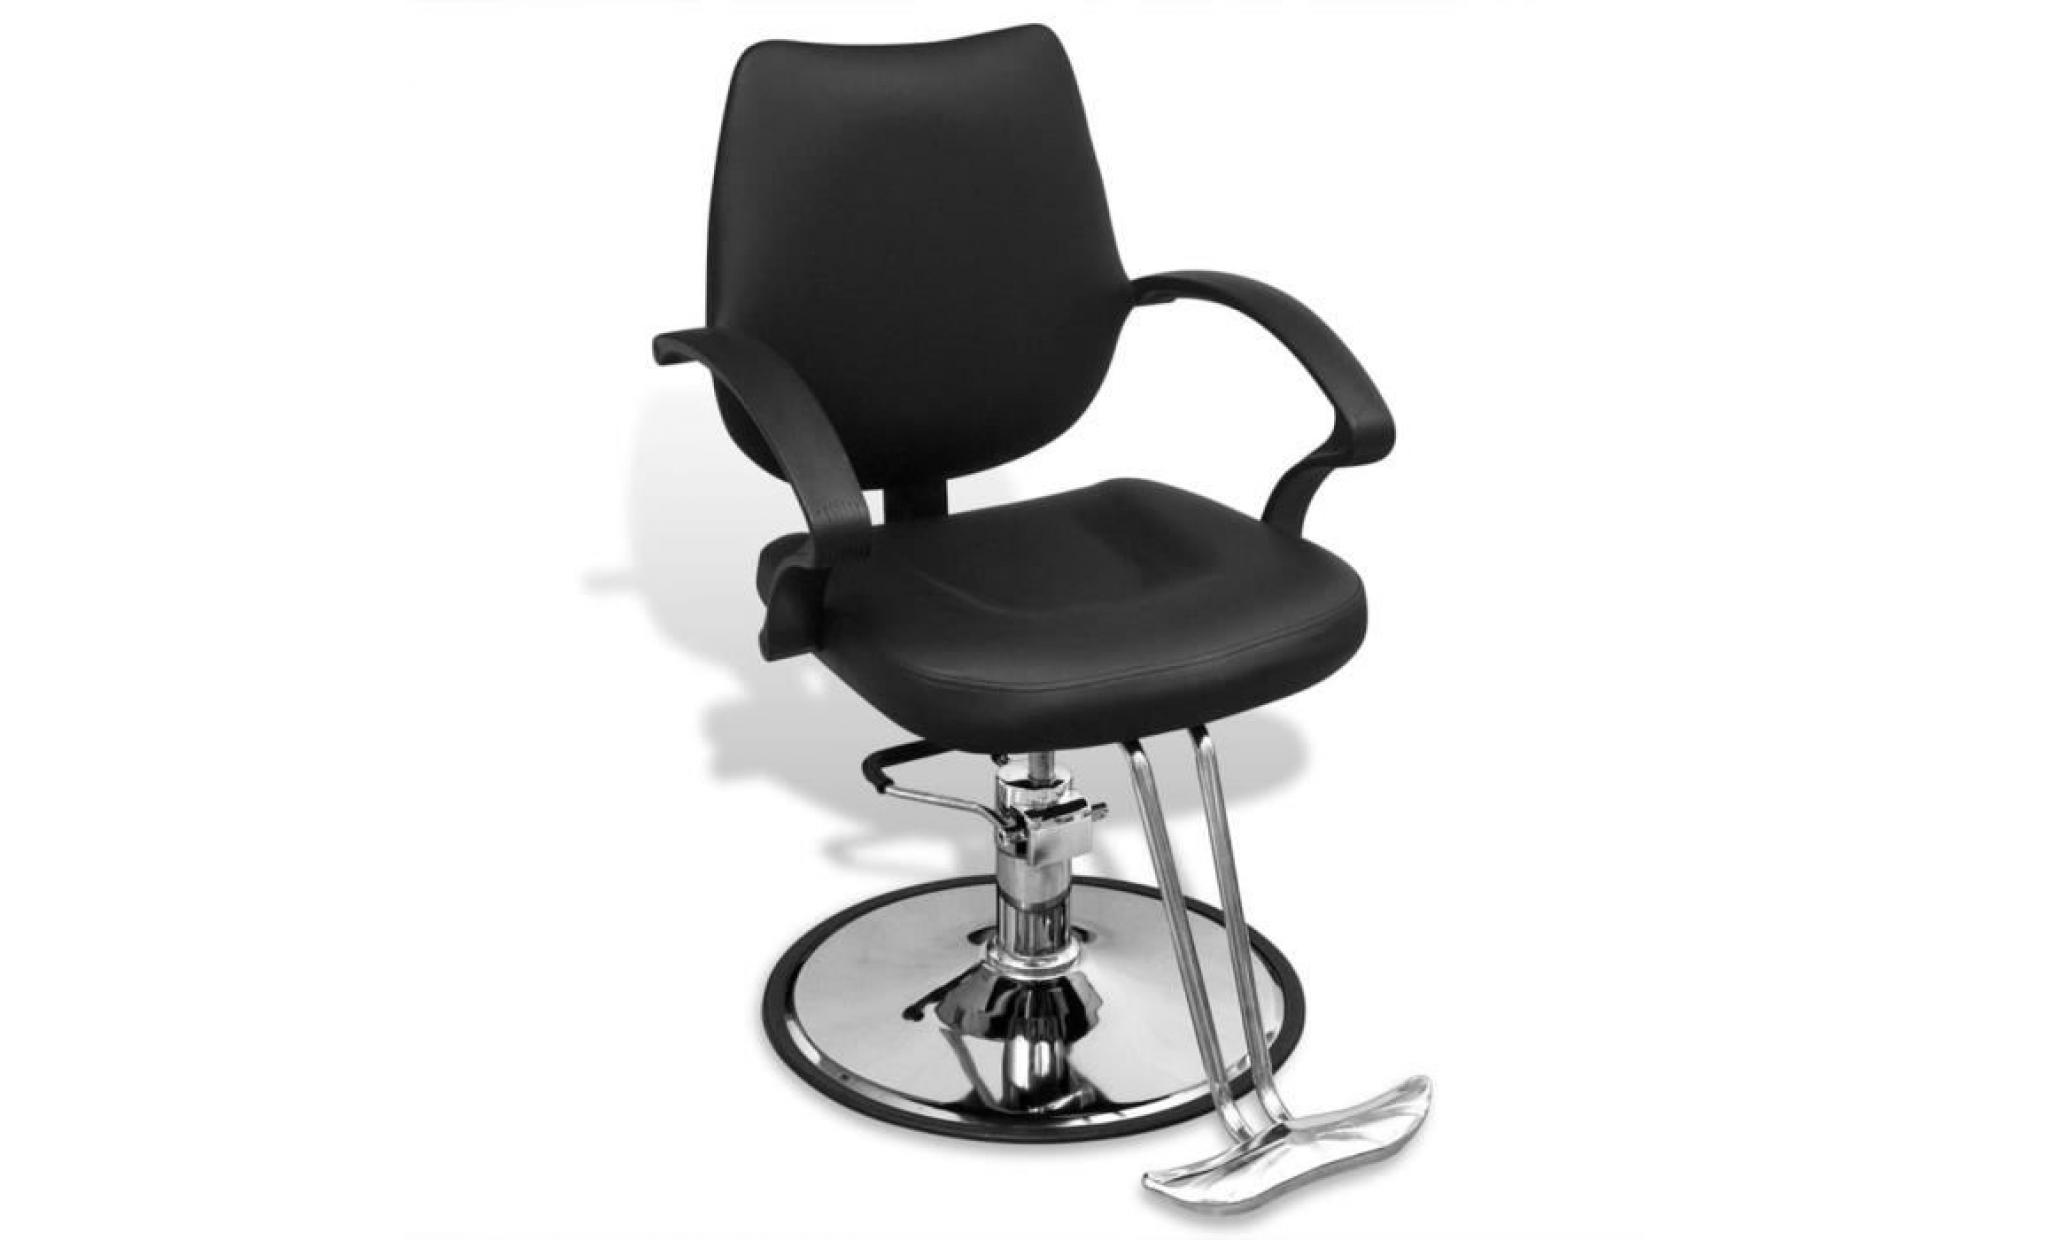 fauteuil de coiffure professionnel 120 x 120 cmmoderne chaise de coiffeuse fauteuil de barbier en cuir artificiel noir